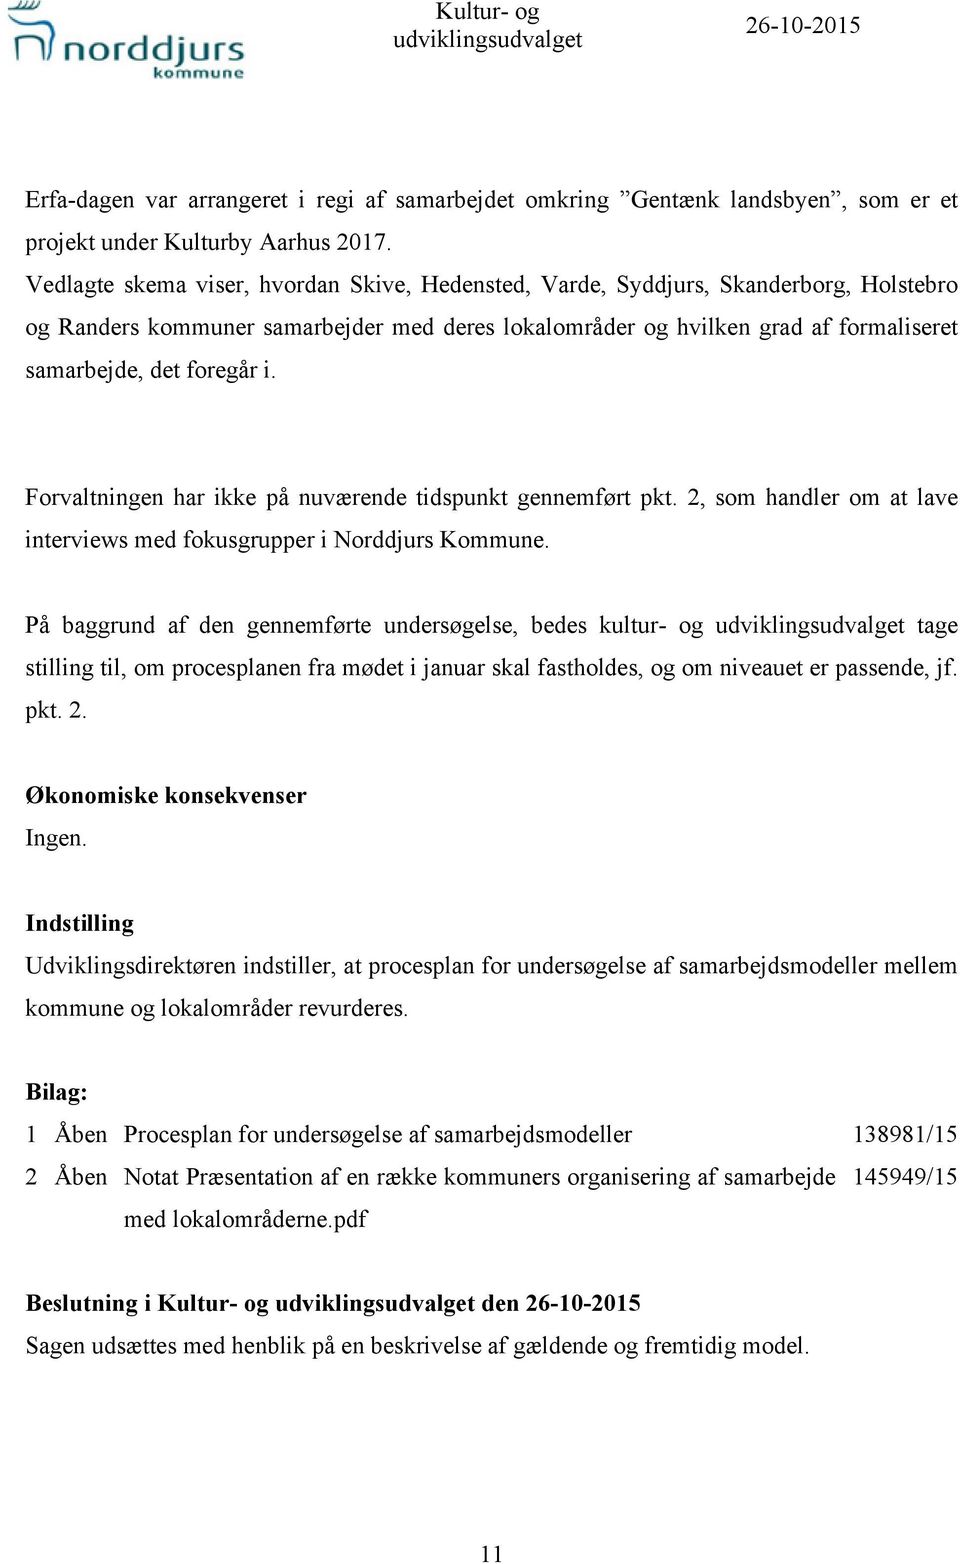 i. Forvaltningen har ikke på nuværende tidspunkt gennemført pkt. 2, som handler om at lave interviews med fokusgrupper i Norddjurs Kommune.